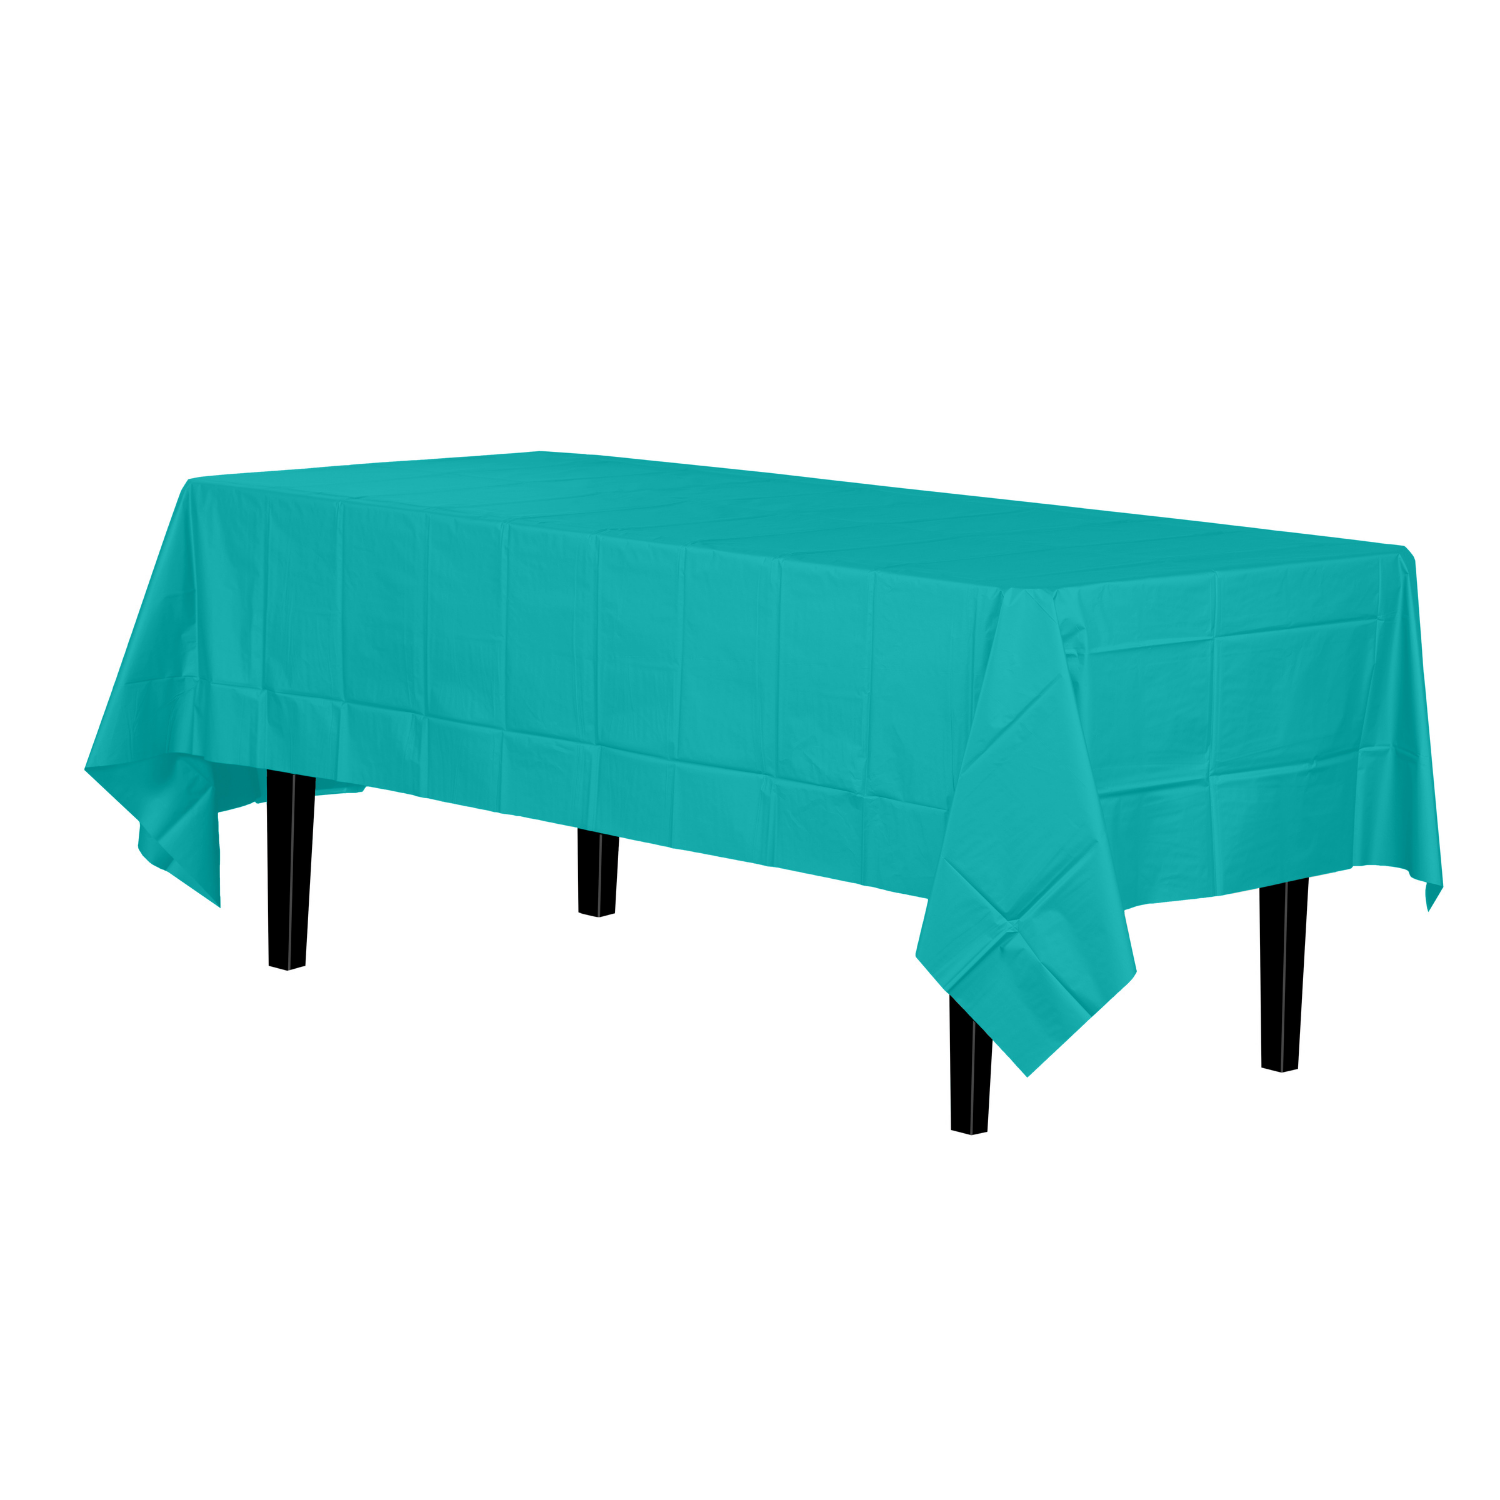 Aqua Plastic Tablecloth | 48 Count